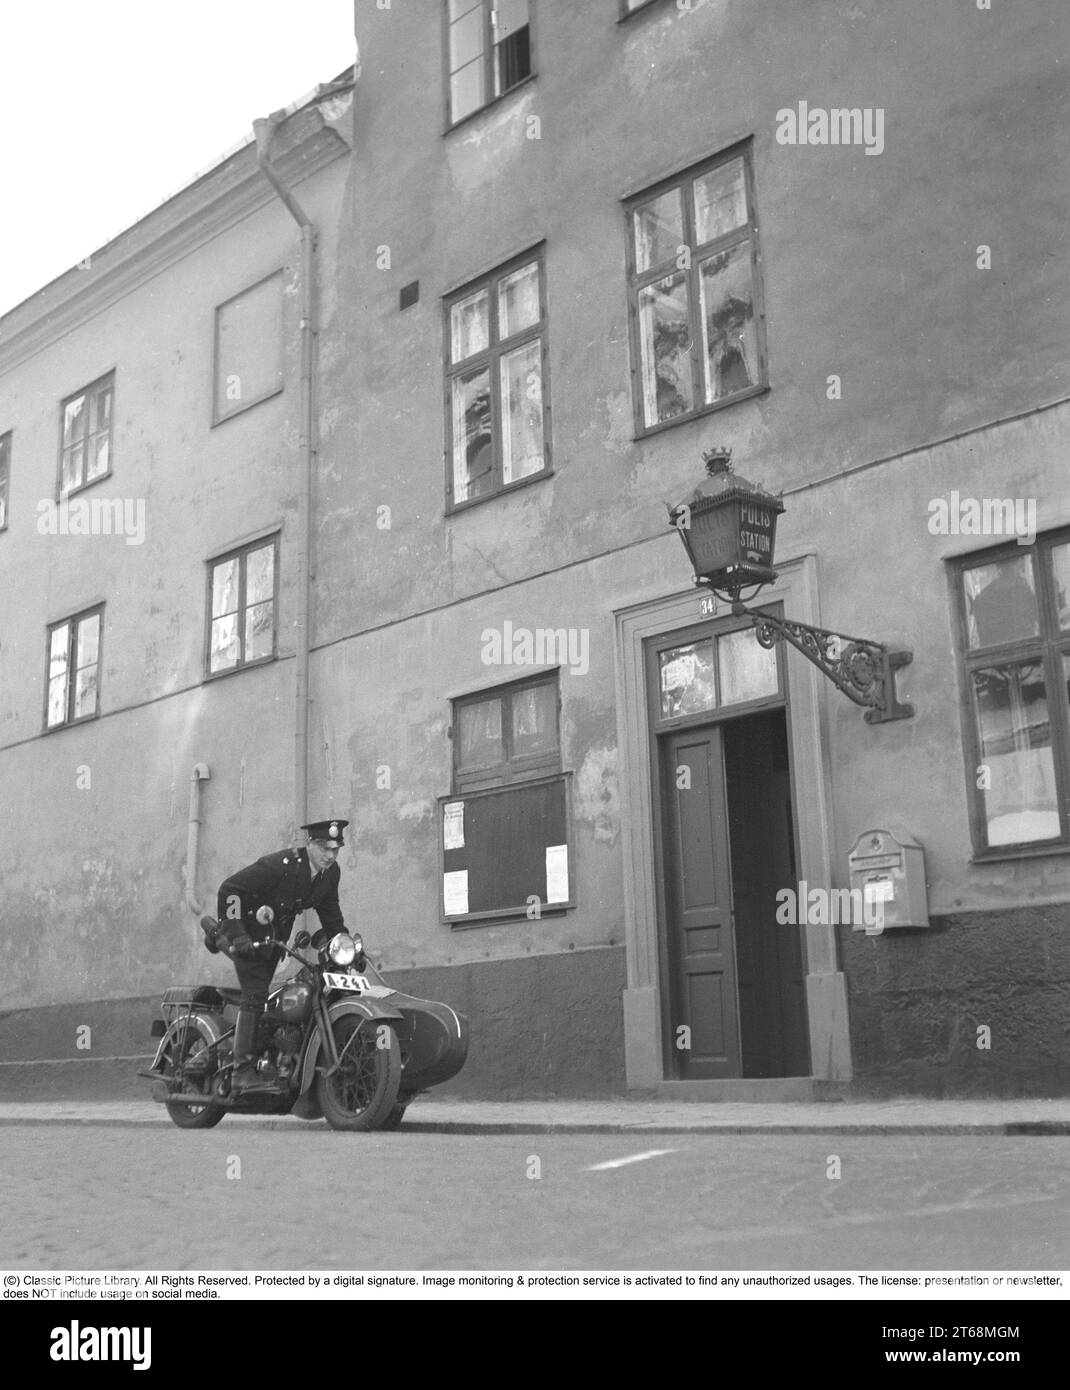 Polizei auf einem Motorrad 1941. Ein Polizist auf einem Motorrad mit Beiwagen vor der Polizeiwache Östermalm 7. Bezirk in Stockholm. Der Constable hat einen Alarm wegen eines Einbruchs erhalten und fährt mit dem Motorrad fort. Schweden 1941. Kristoffersson Ref. 218-18 Stockfoto